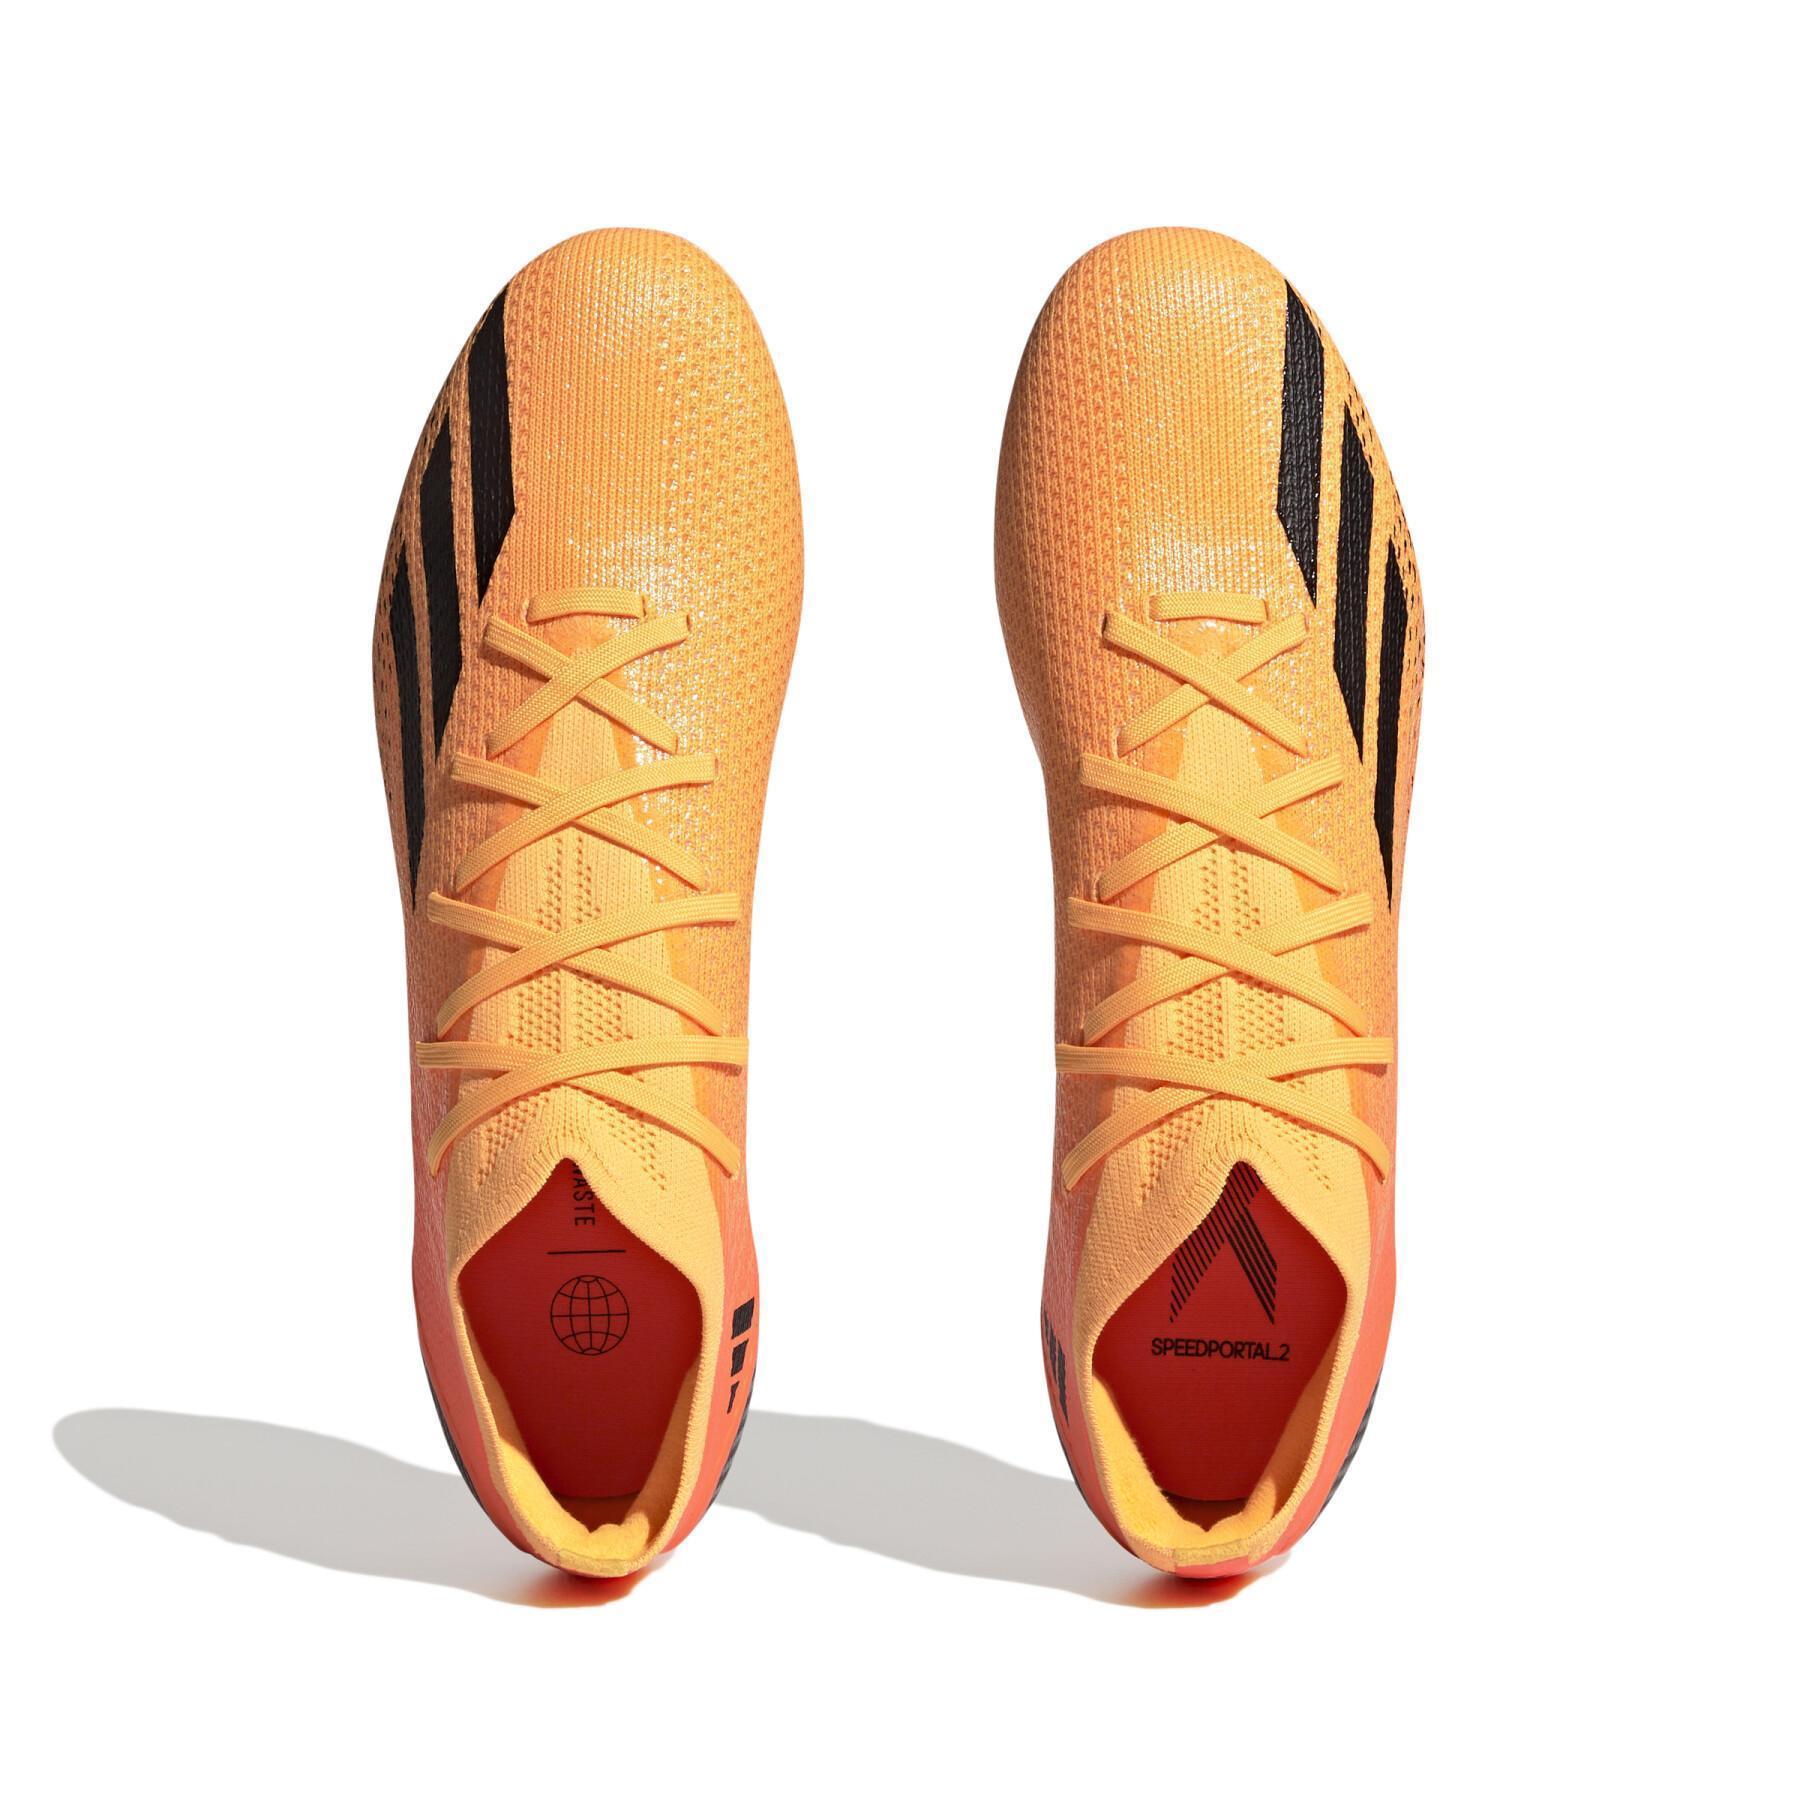 Chaussures de football adidas X Speedportal.2 FG Heatspawn Pack